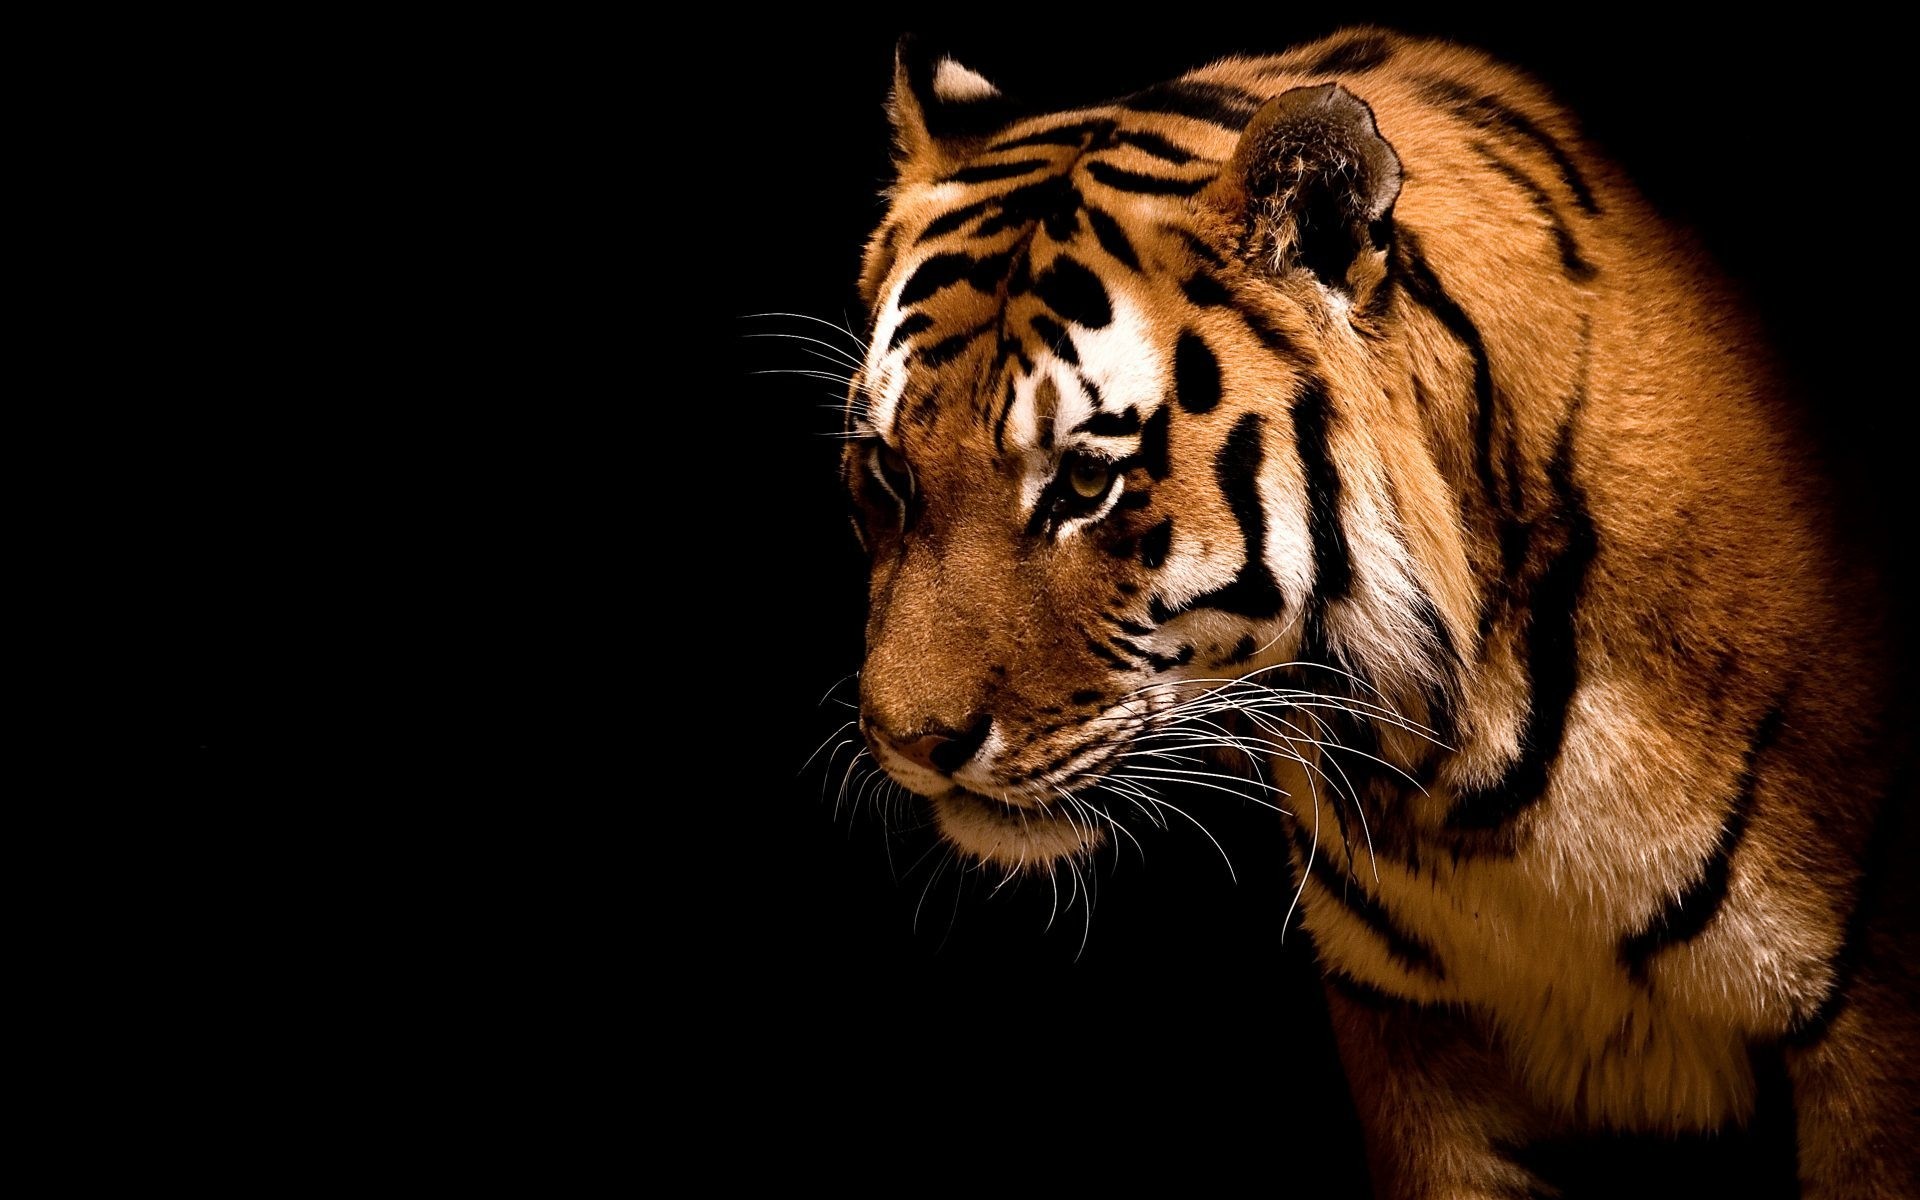 животные кошка тигр дикой природы хищник млекопитающее животное зоопарк агрессии портрет злой полоса опасность глаз мех глядя охотник сафари мясоед джунгли